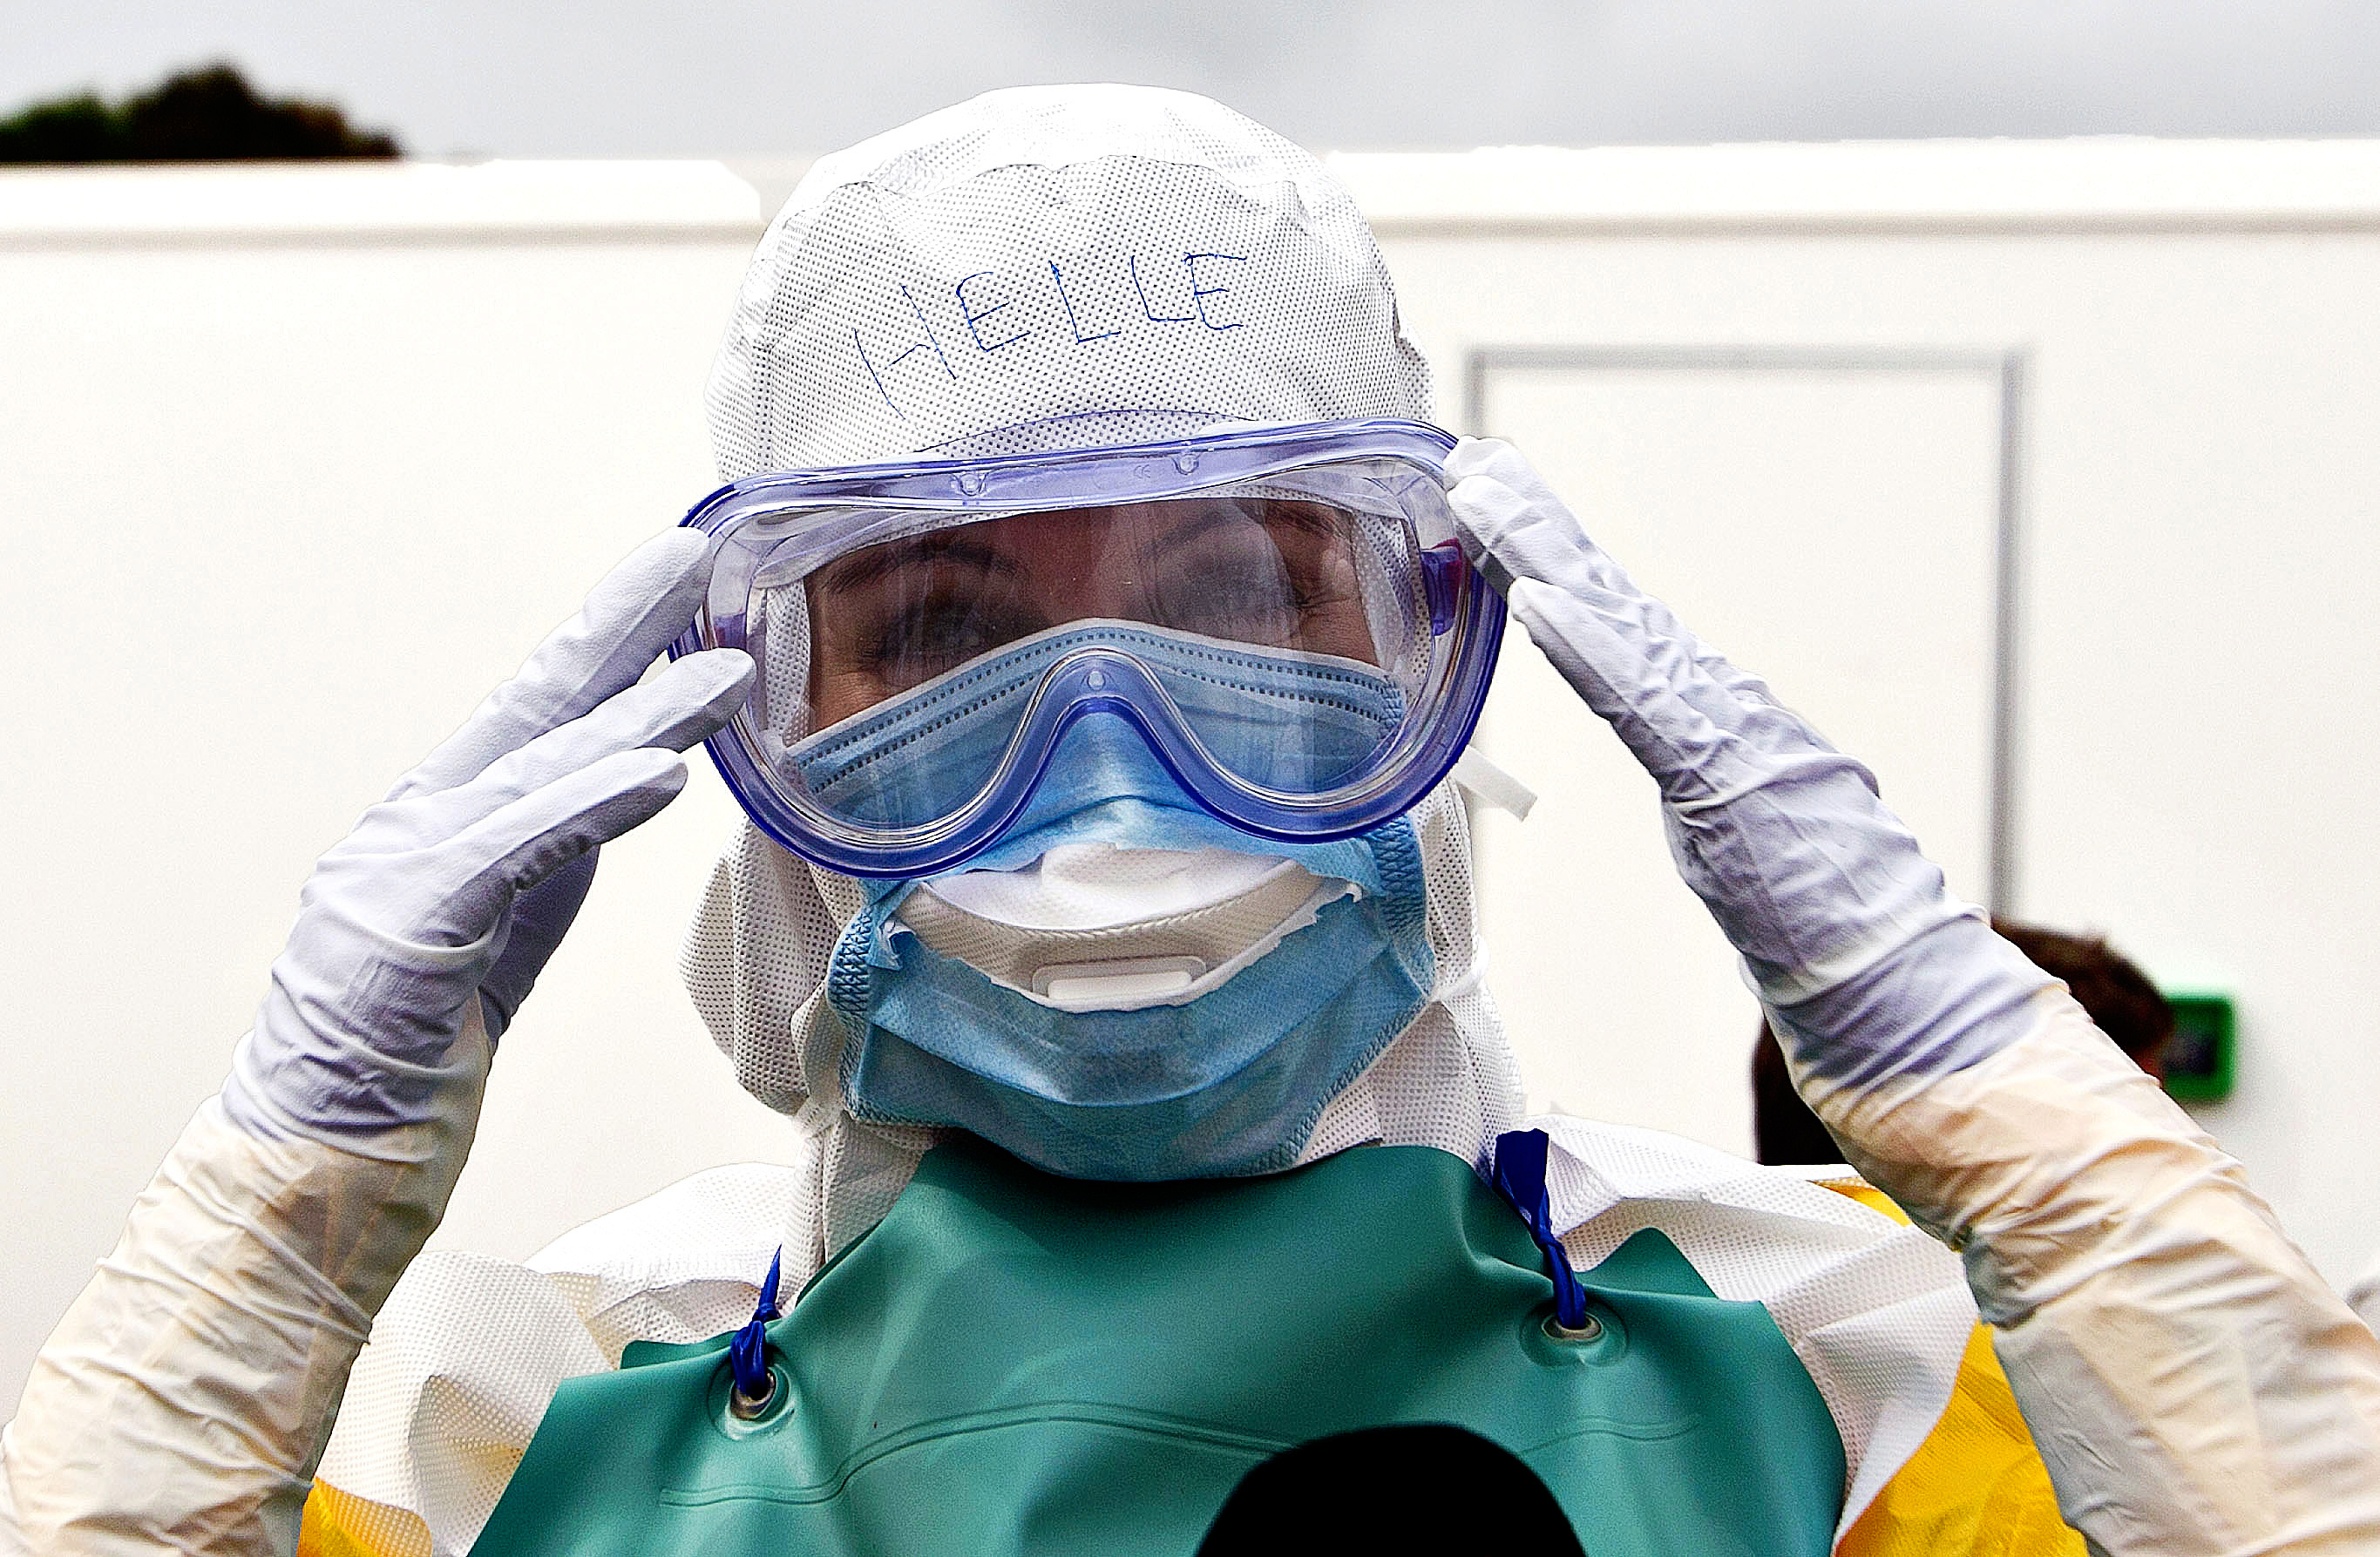 Helle Torning-Schmidt under Ebola